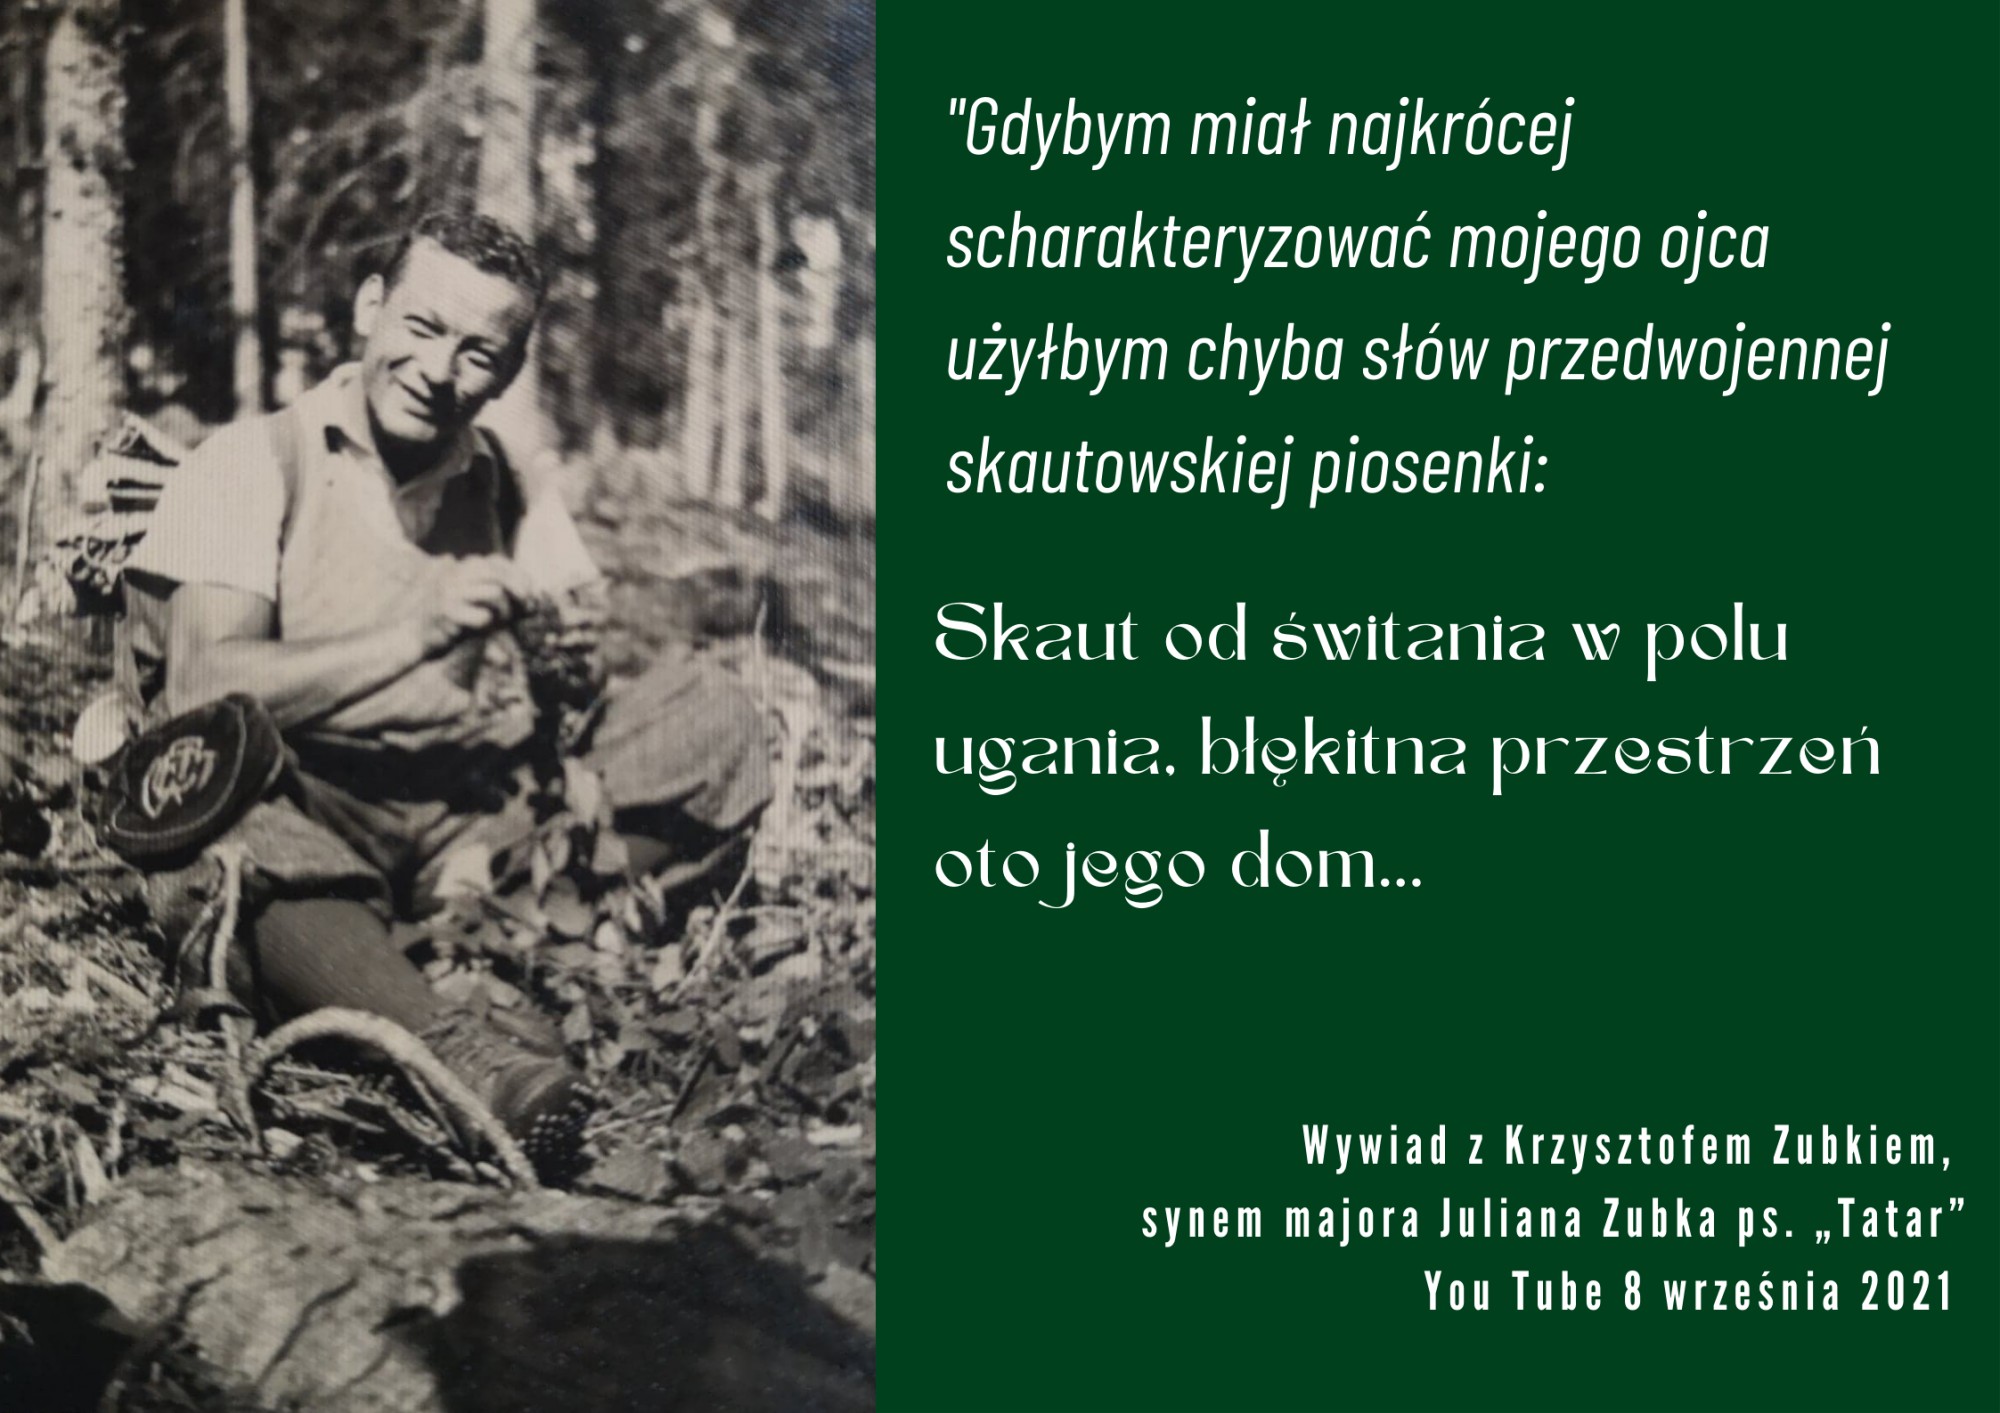 Wspomnienie majora Juliana Zubka ps. „Tatar” w 40. rocznicę śmierci